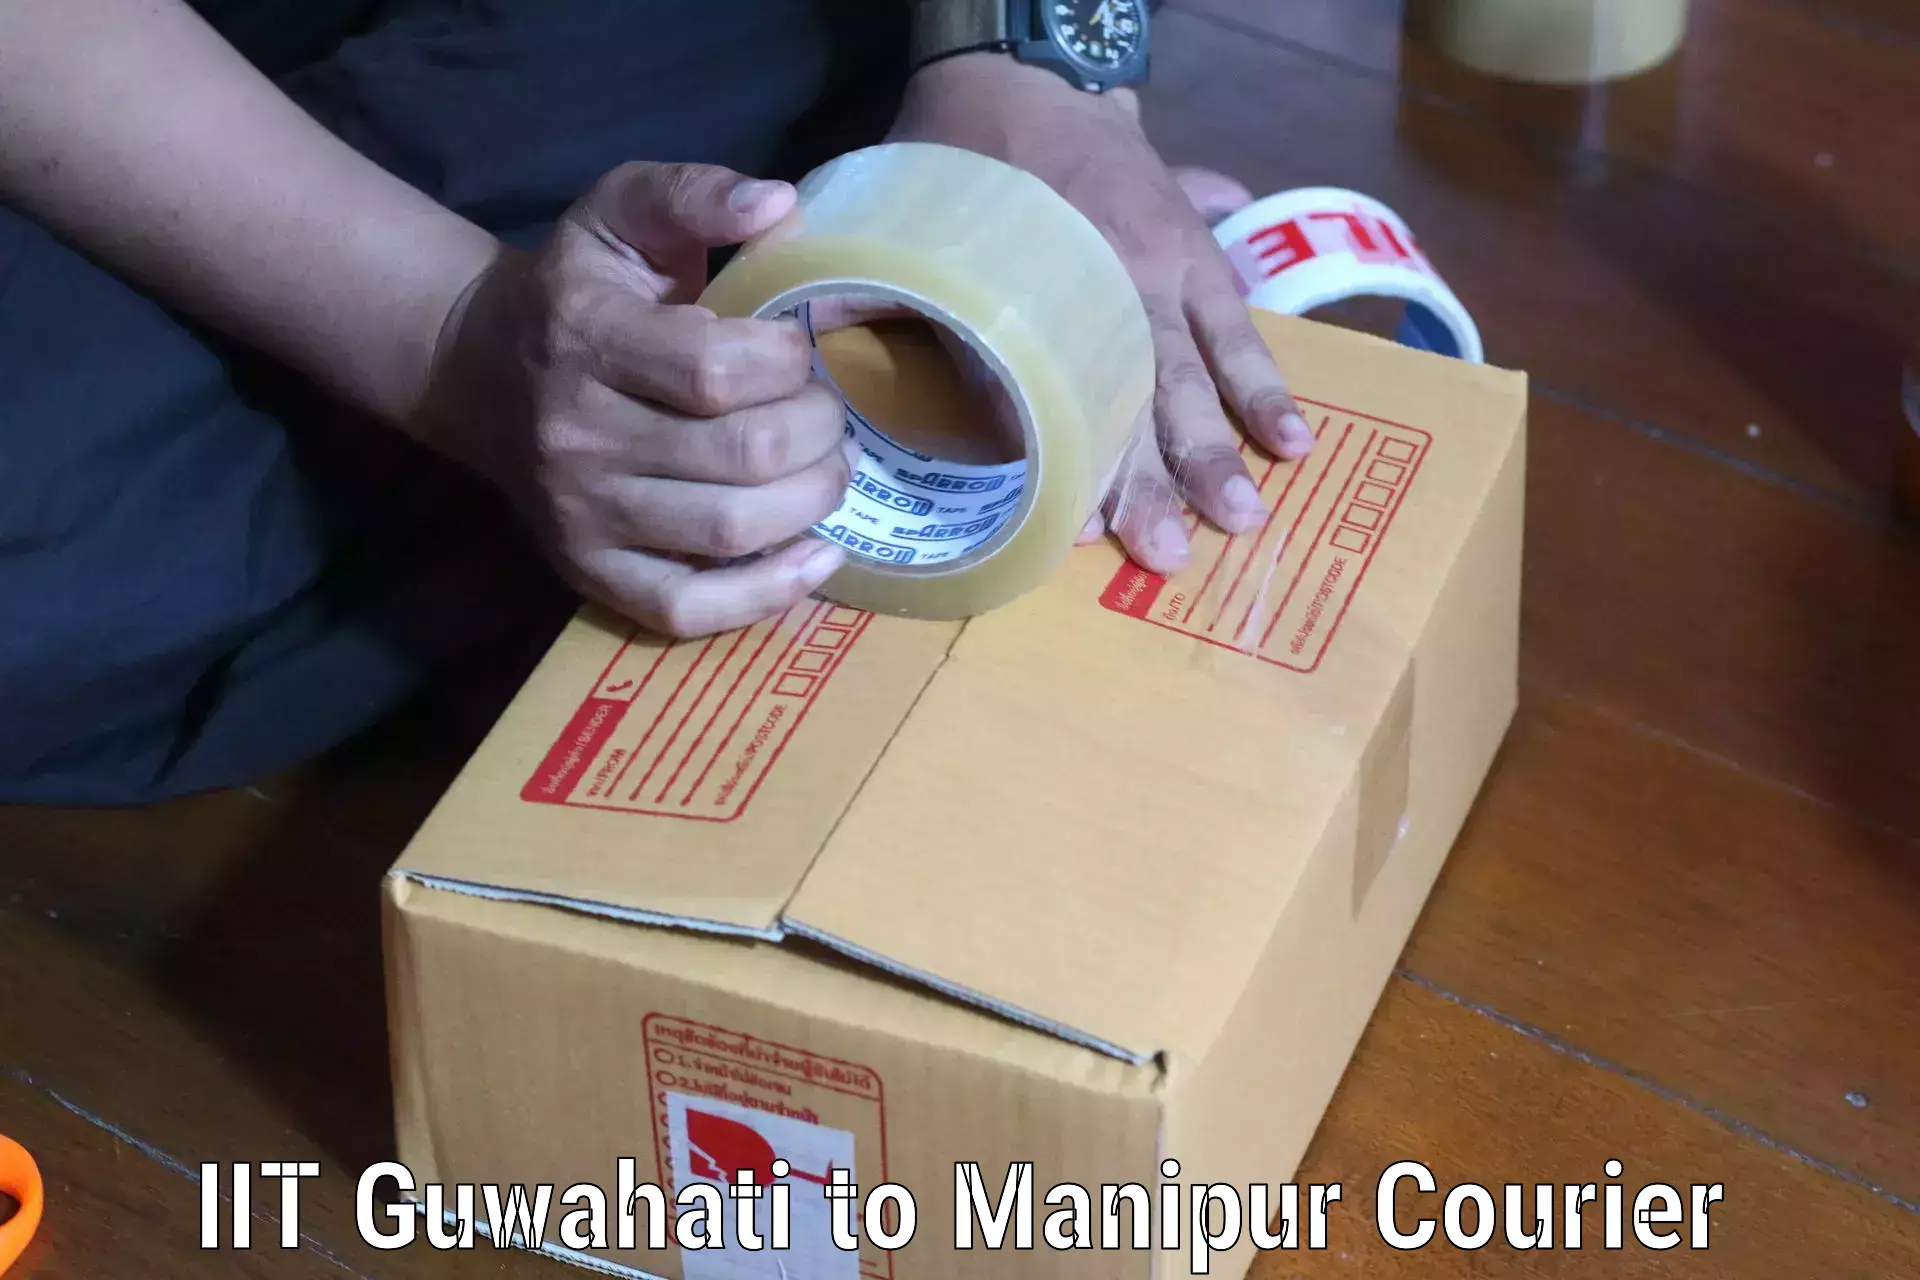 Courier service comparison IIT Guwahati to Kaptipada